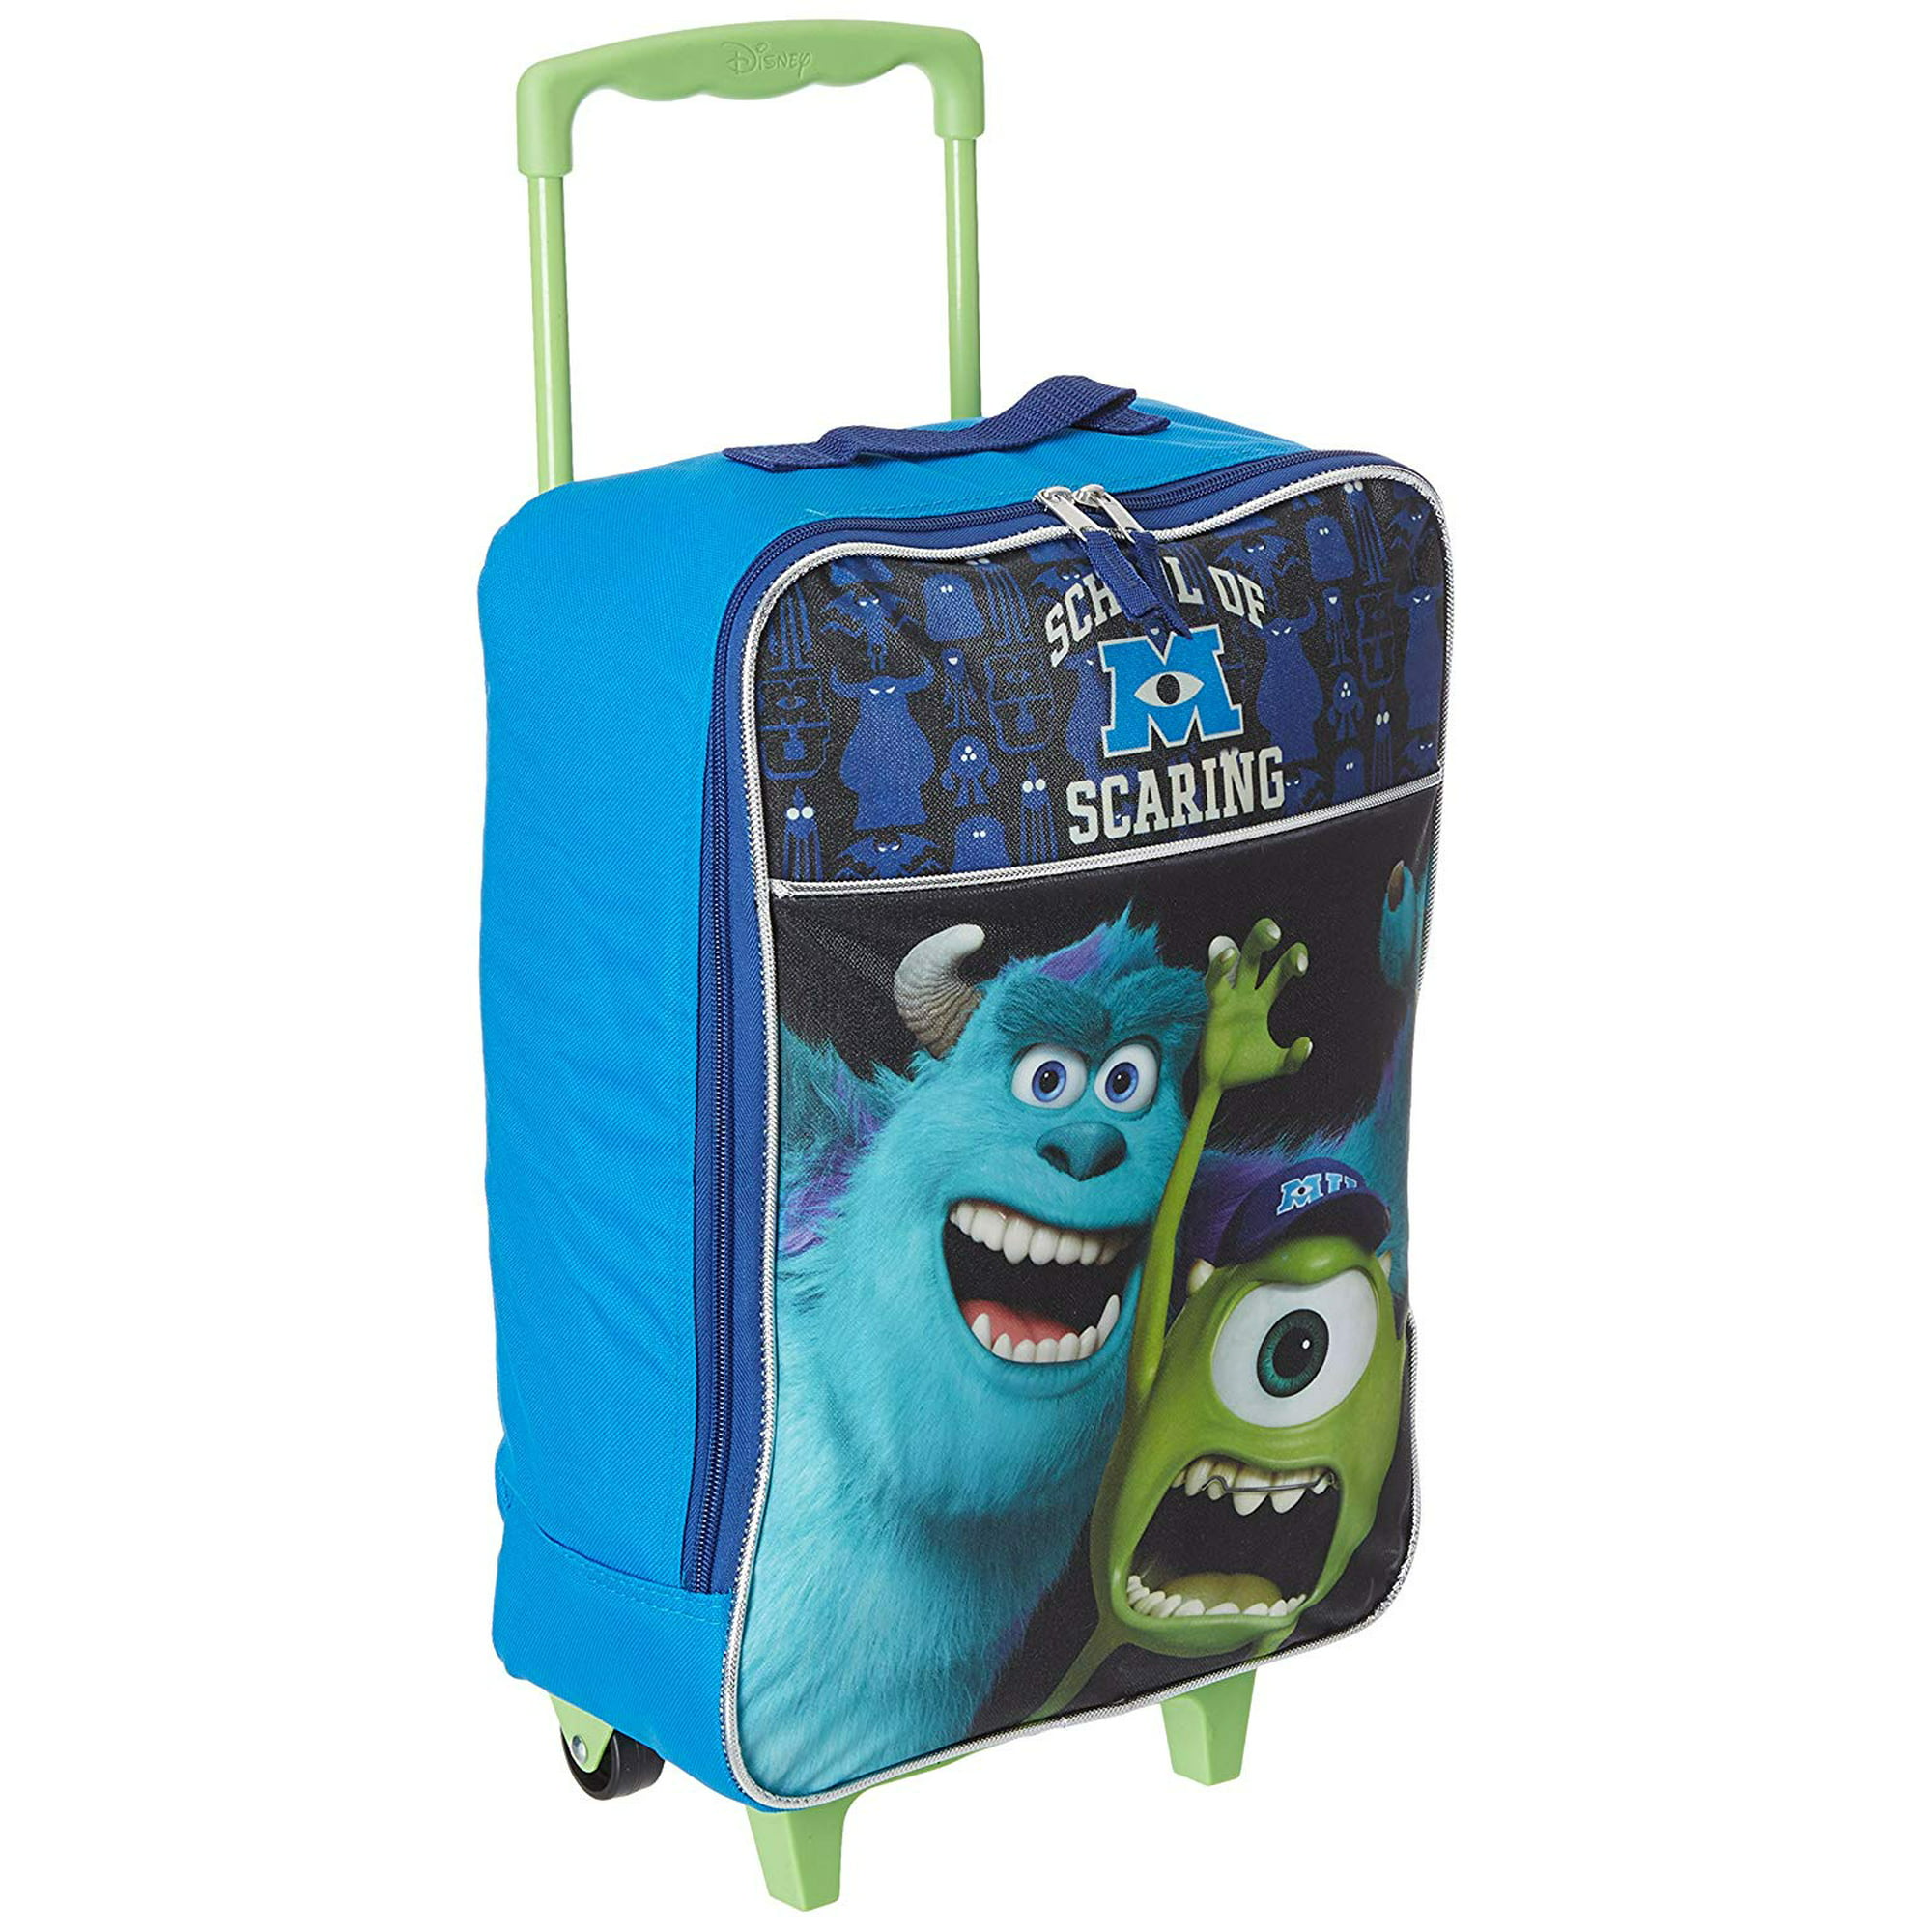 Monsters Inc Travel Bag Monsters Inc Duffel Bag Disney